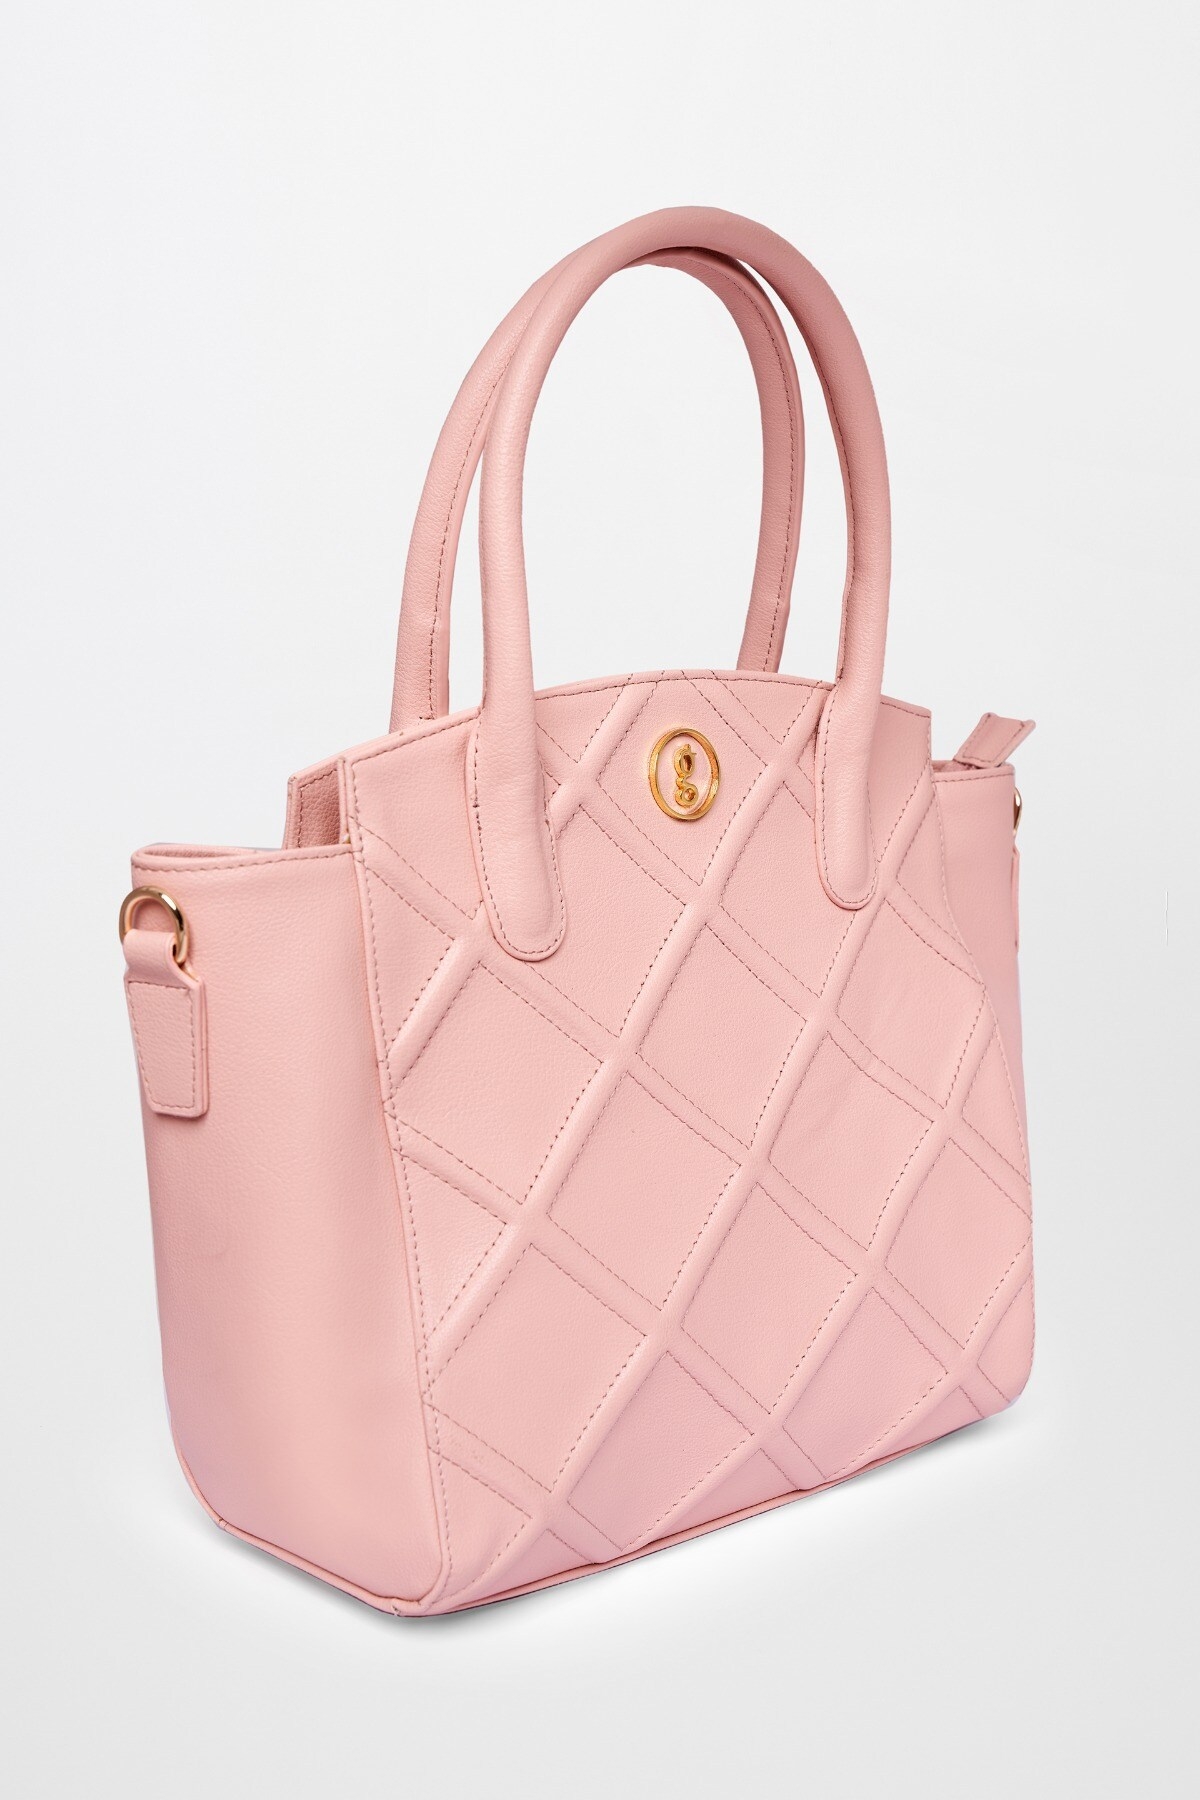 Global Desi | Pink Sling Hand Bag